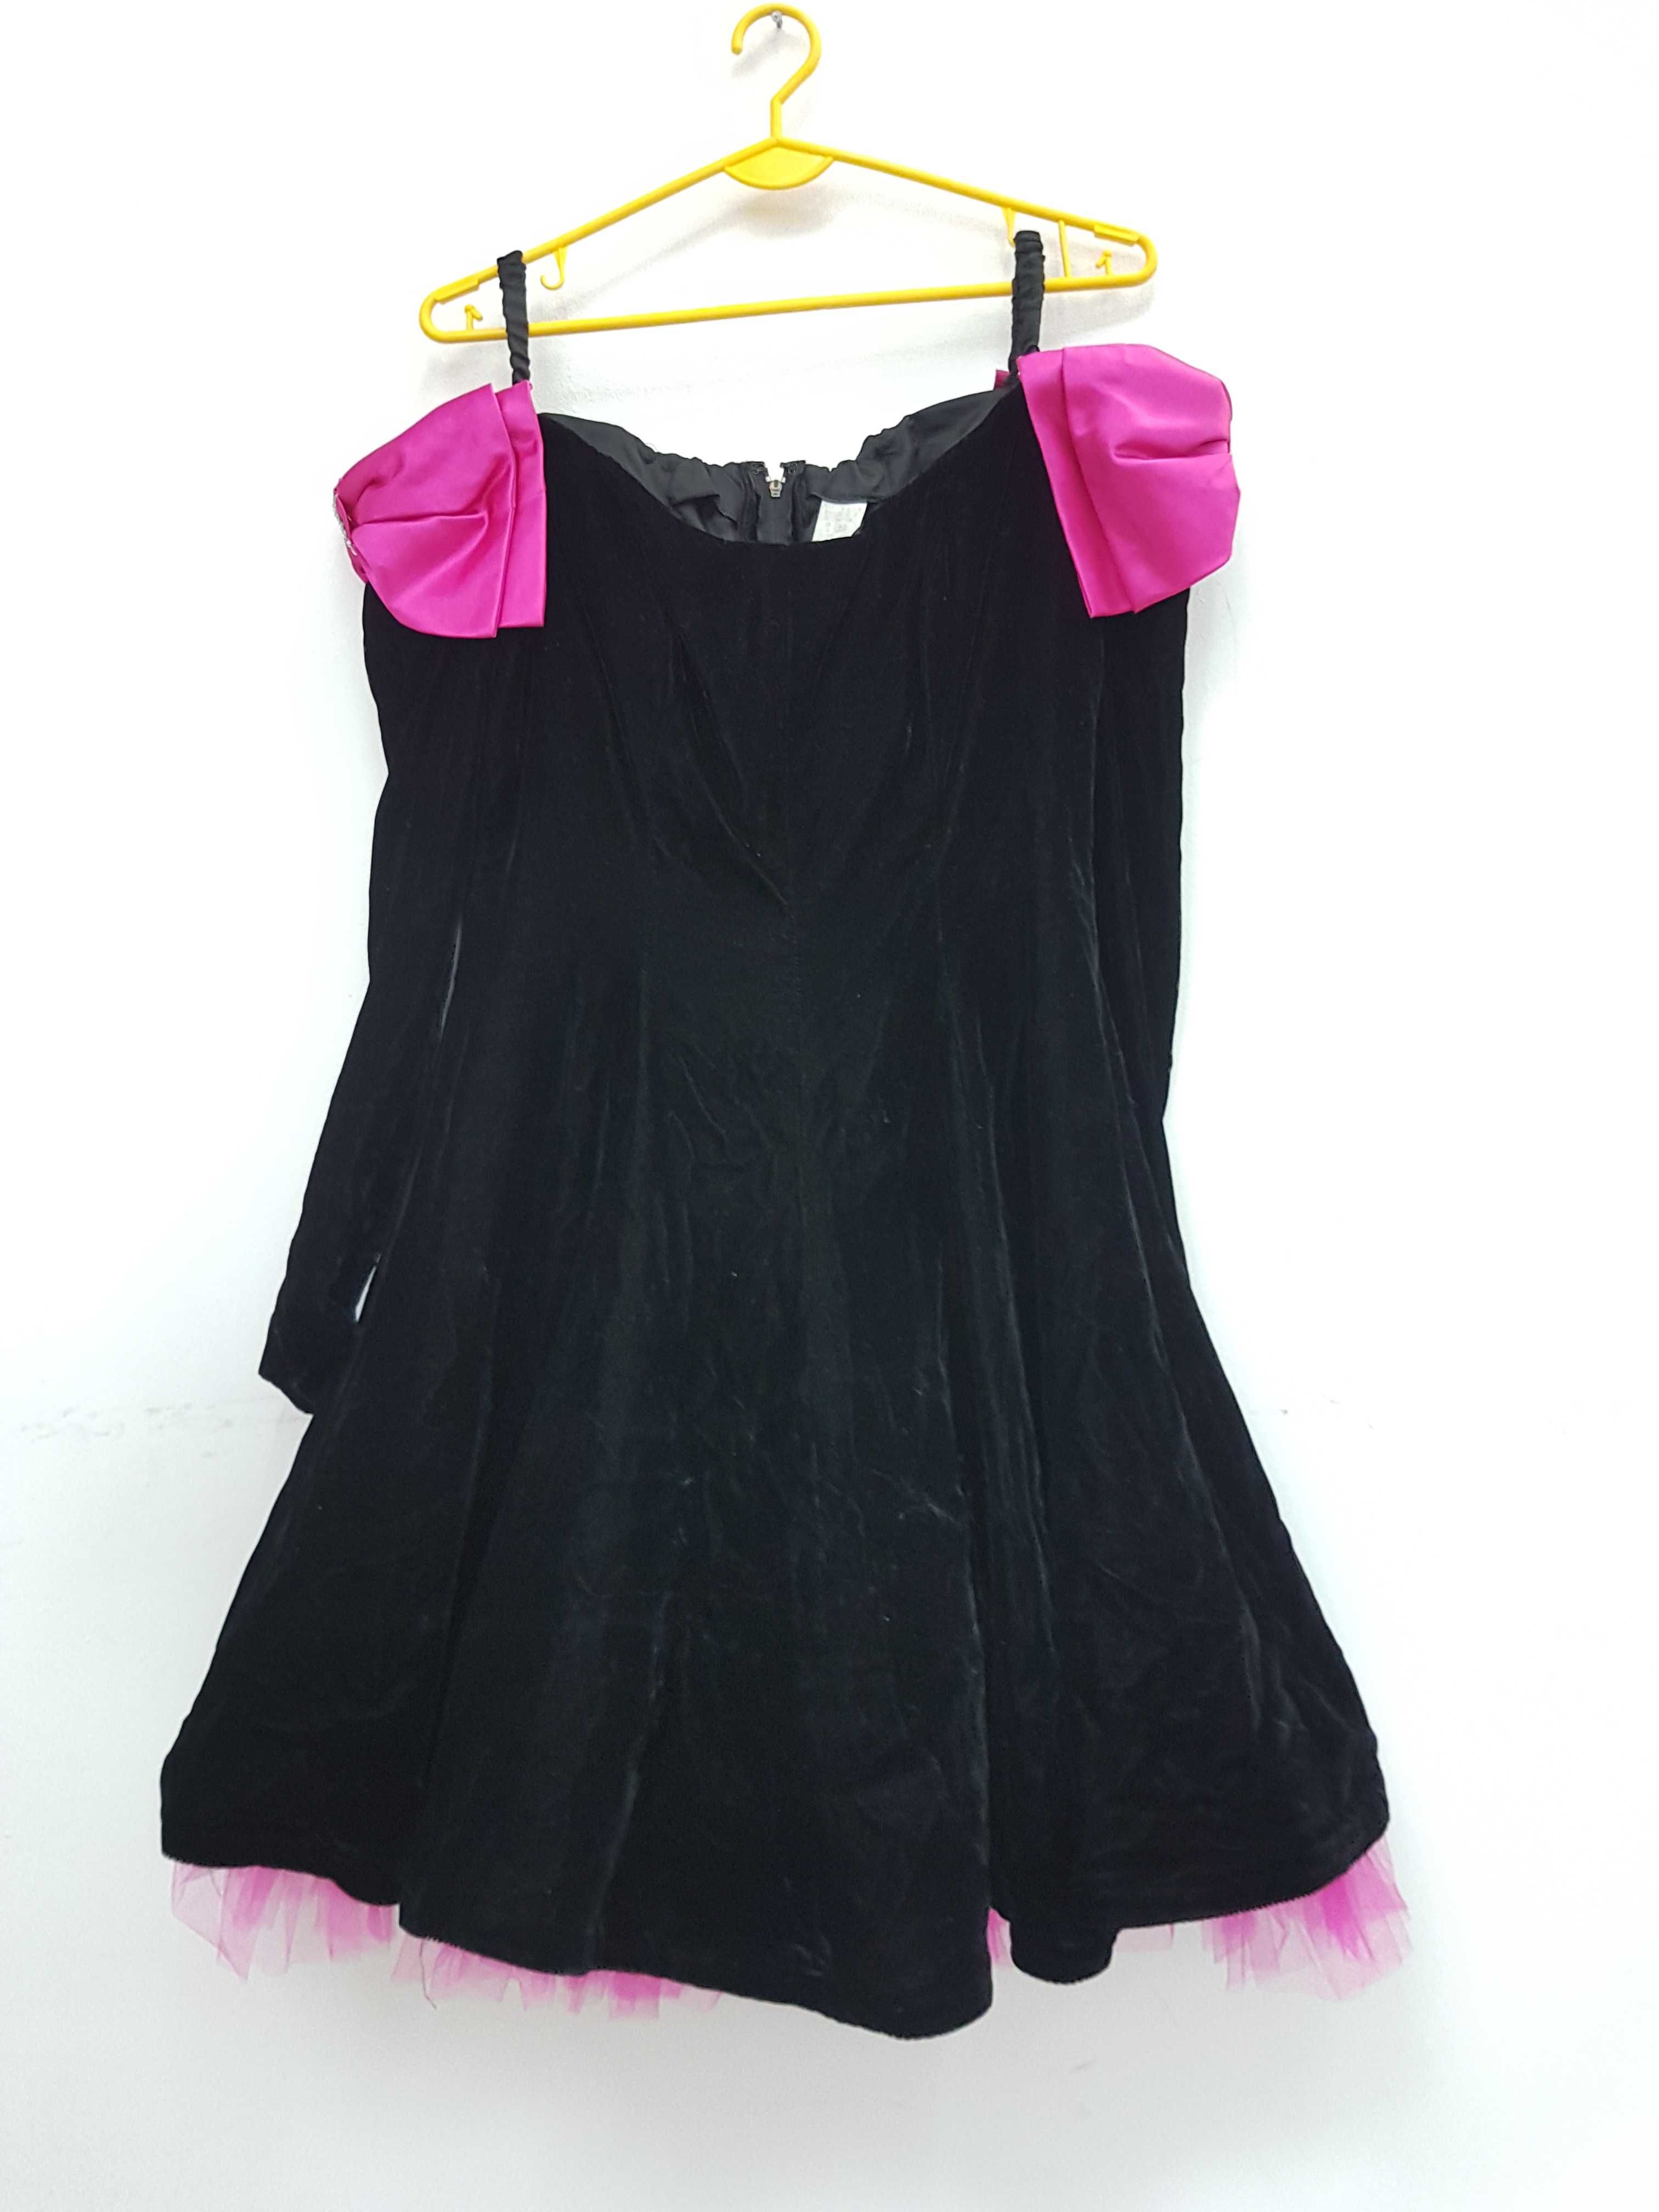 Czarna sukienka aksamitna vintage, sukienka do tańca A1892